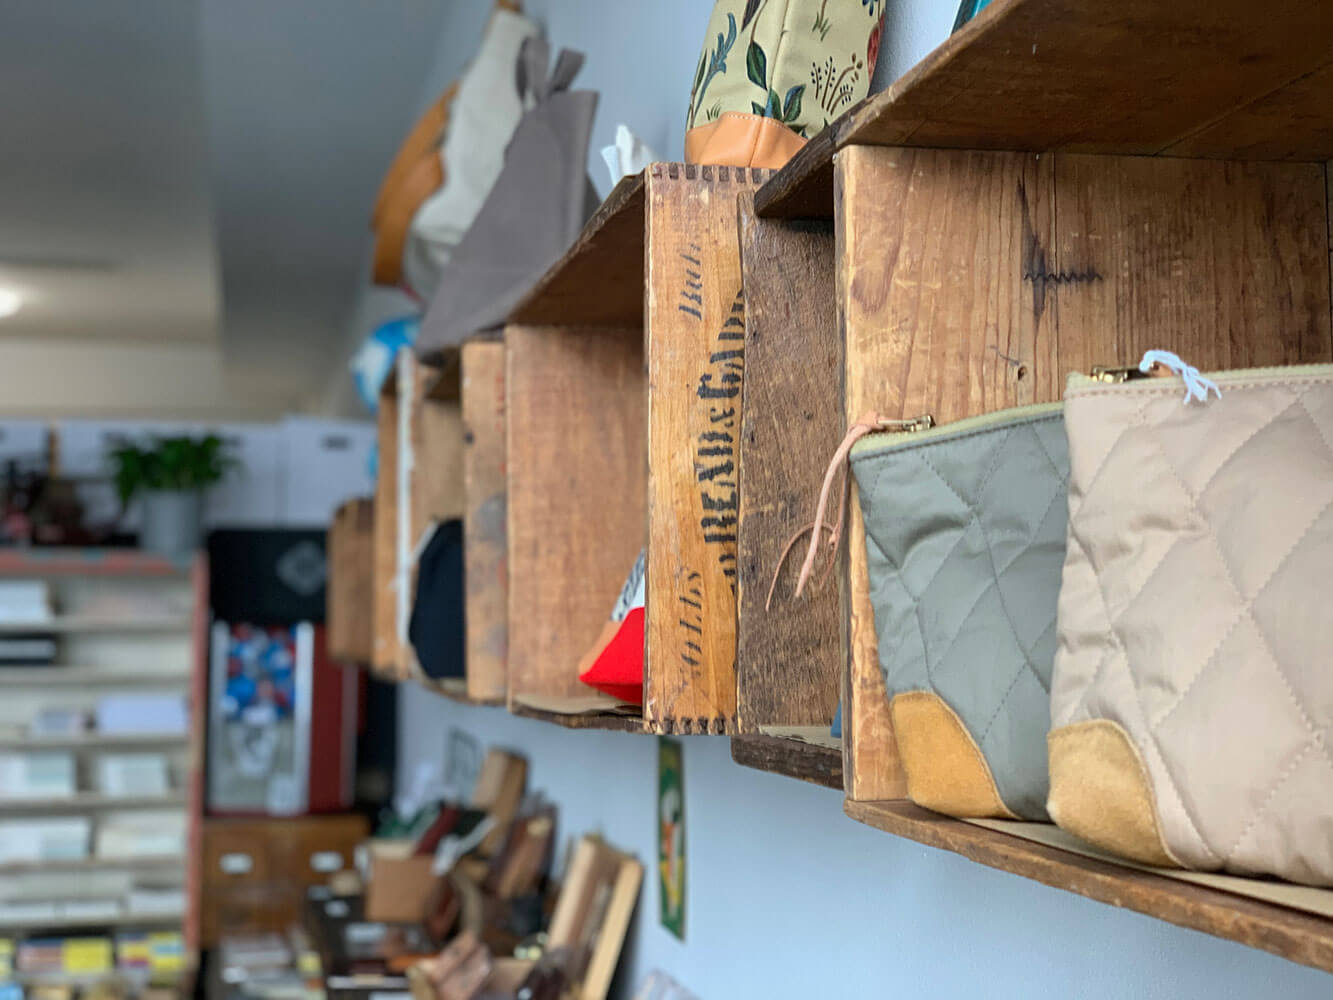 Unique and rustic merchandise shelves inside Baum-kuchen